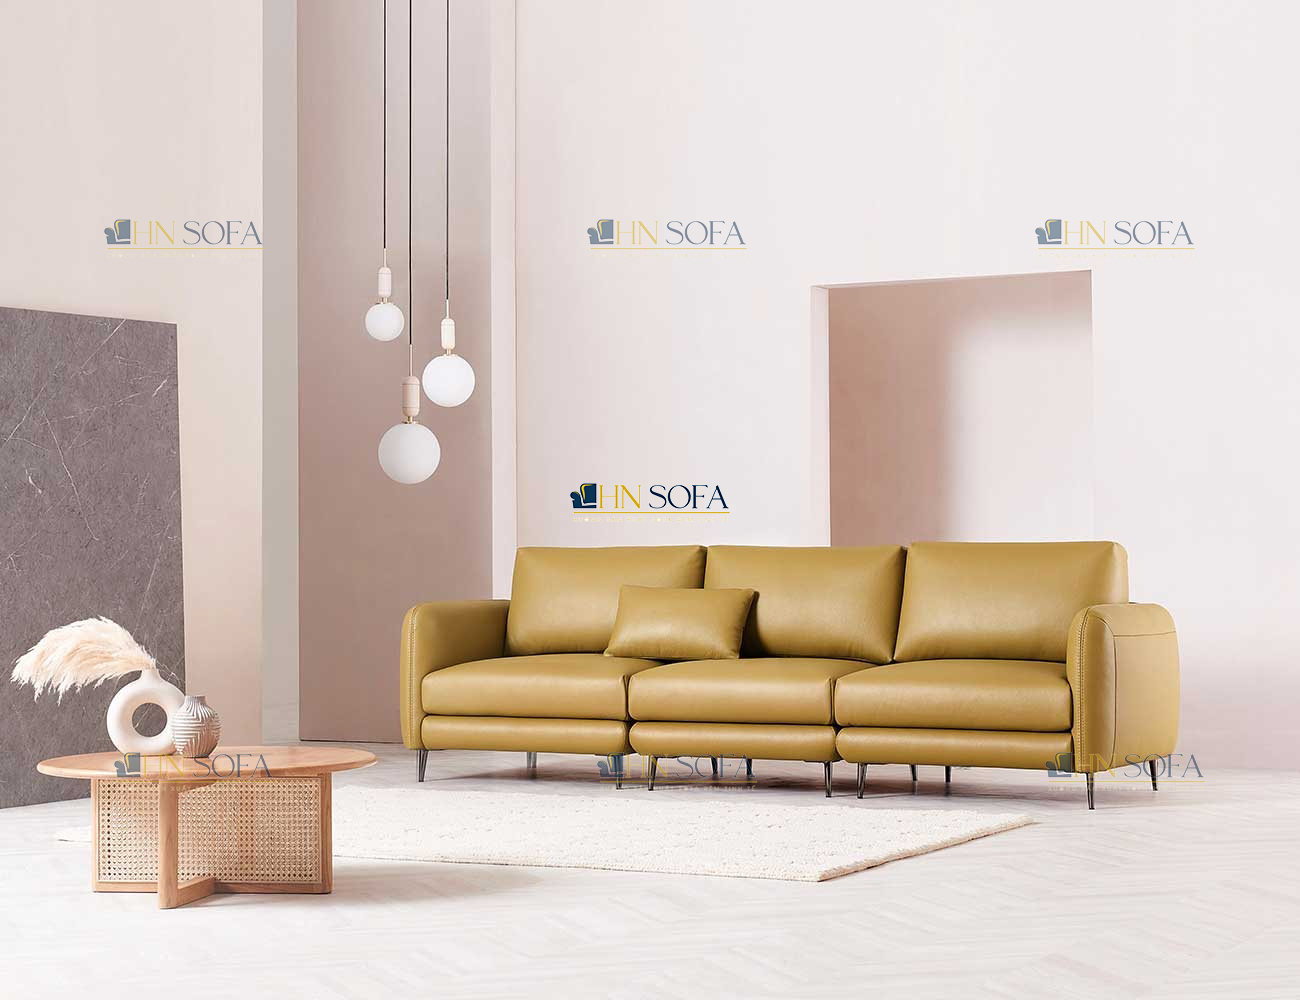 Sofa văng có chiều dài 2m3, sâu 90cm thoải mái cho việc nằm nghỉ ngơi, thư giãn, tiếp khách